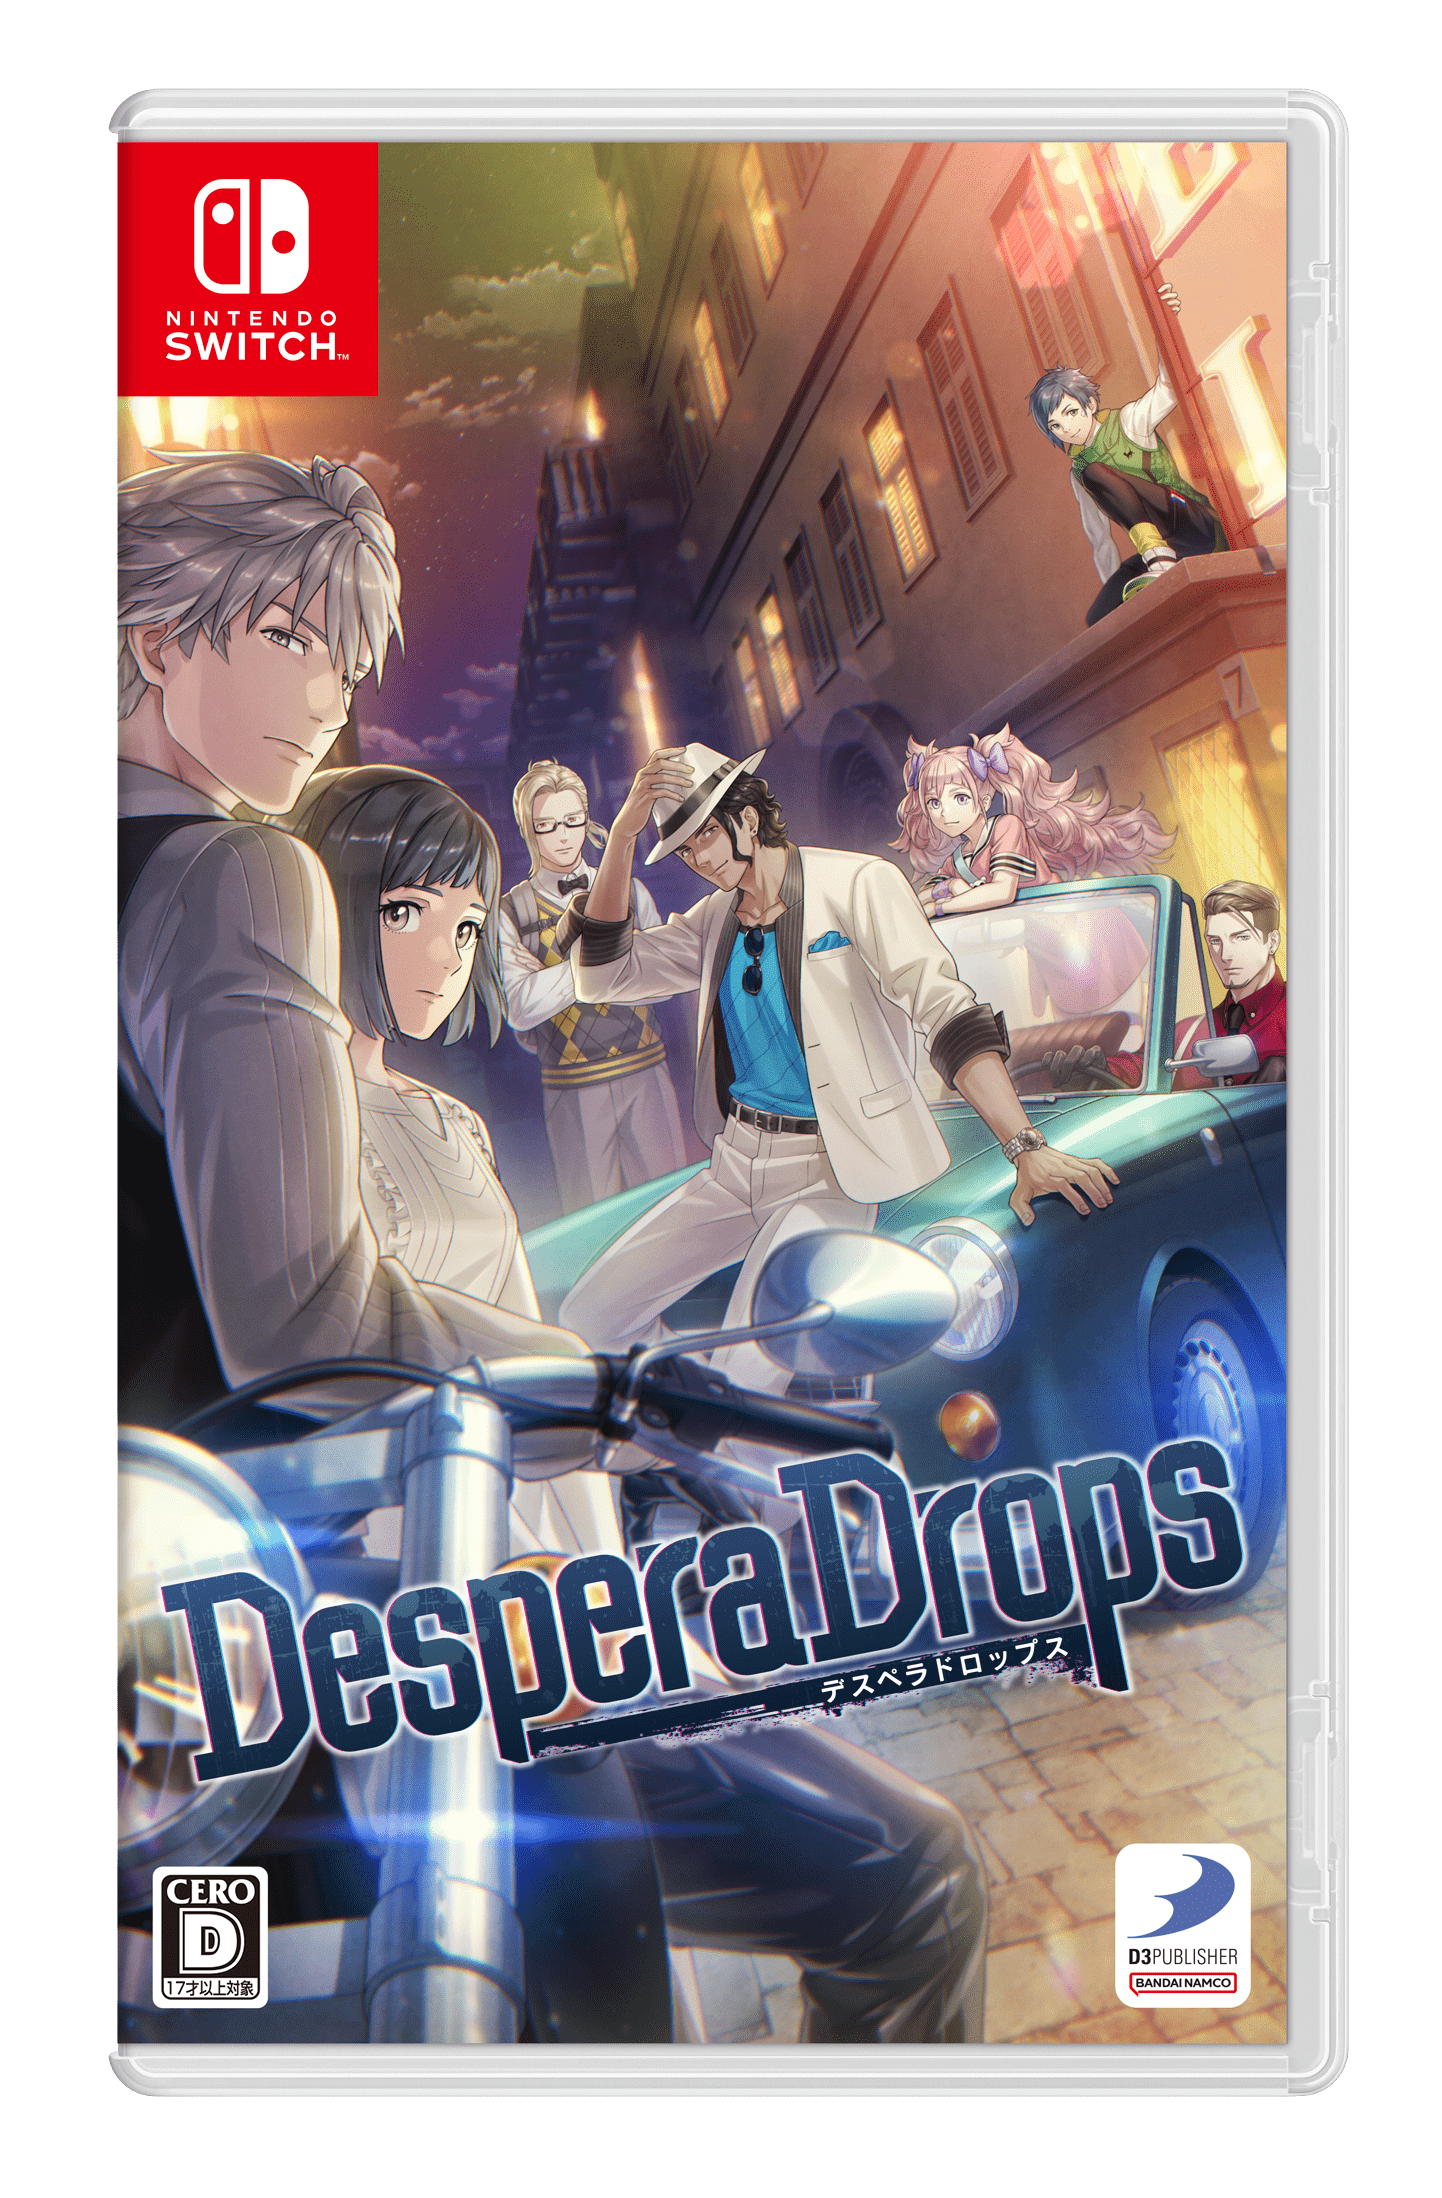 Despera Drops